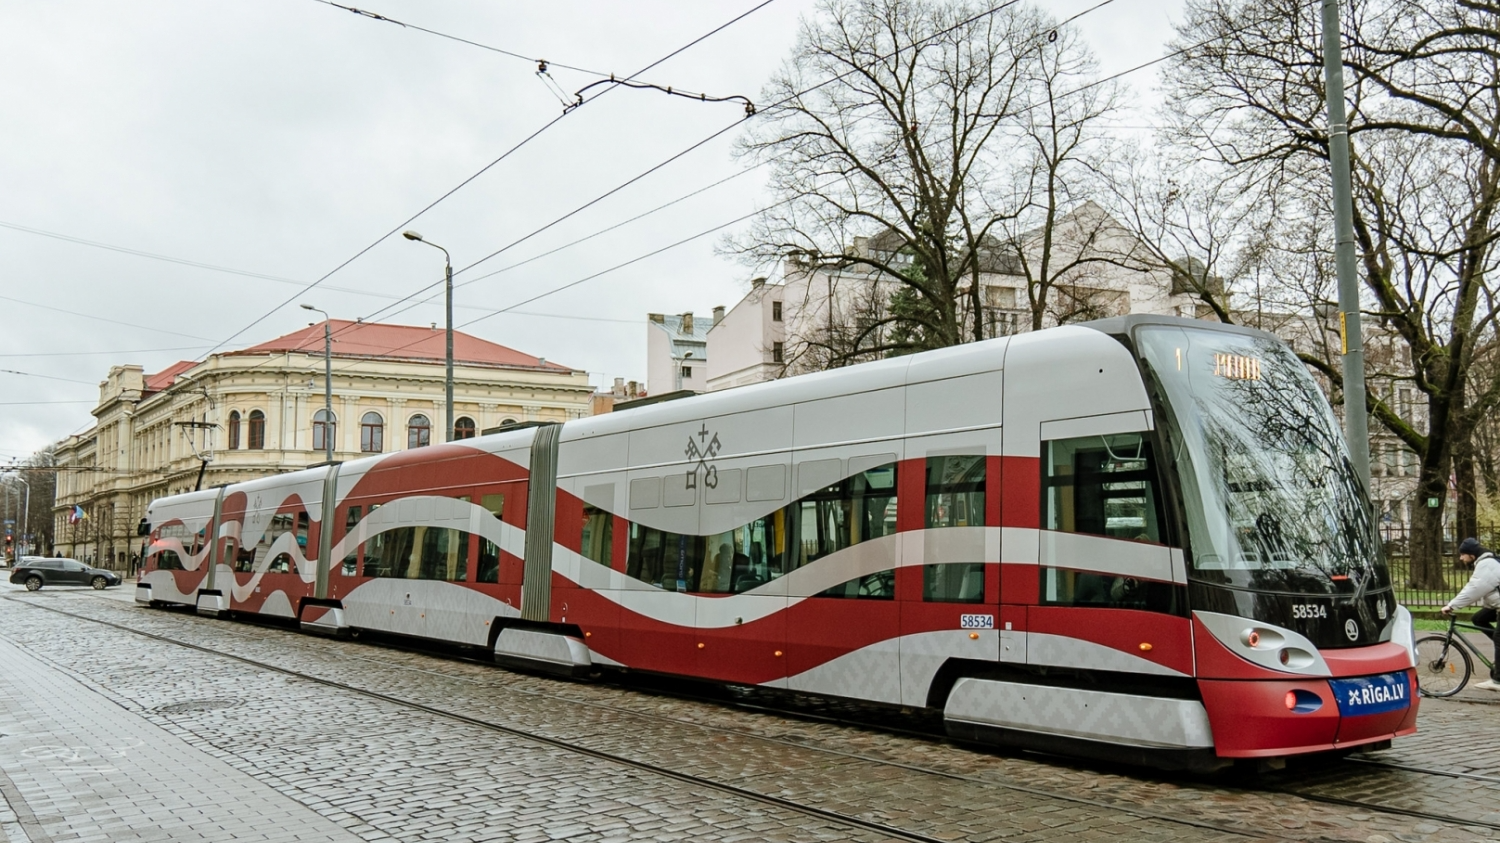 Valsts svētkos, 18. novembrī, Rīgas pilsētas sabiedriskais transports būs bez maksas